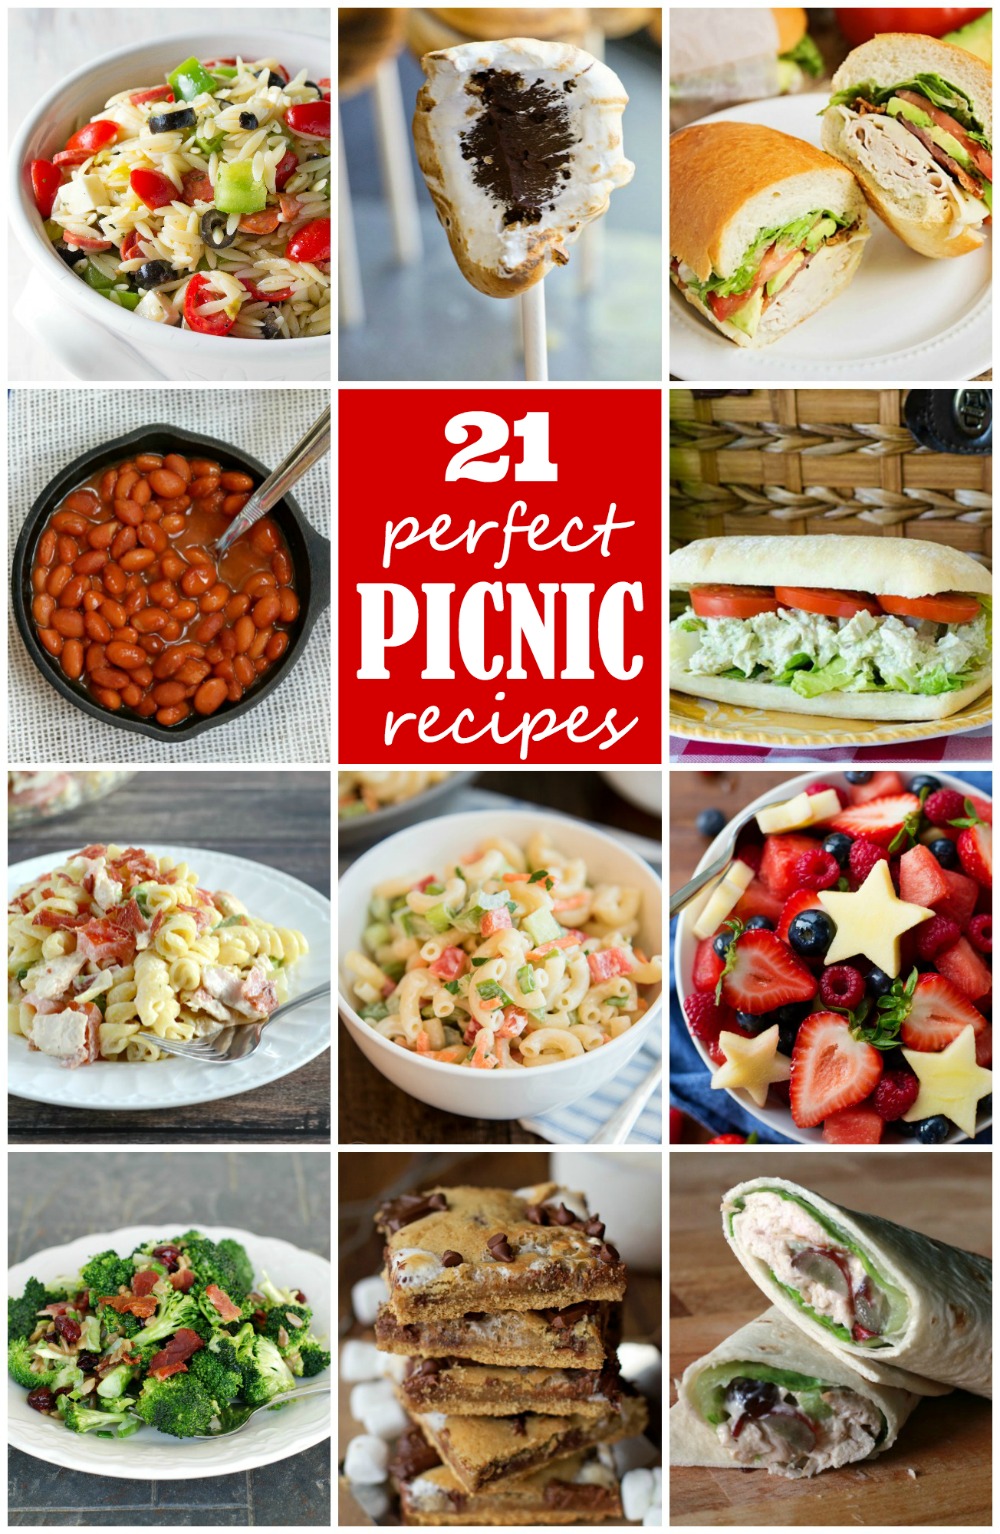 21 perfect picnic recipes